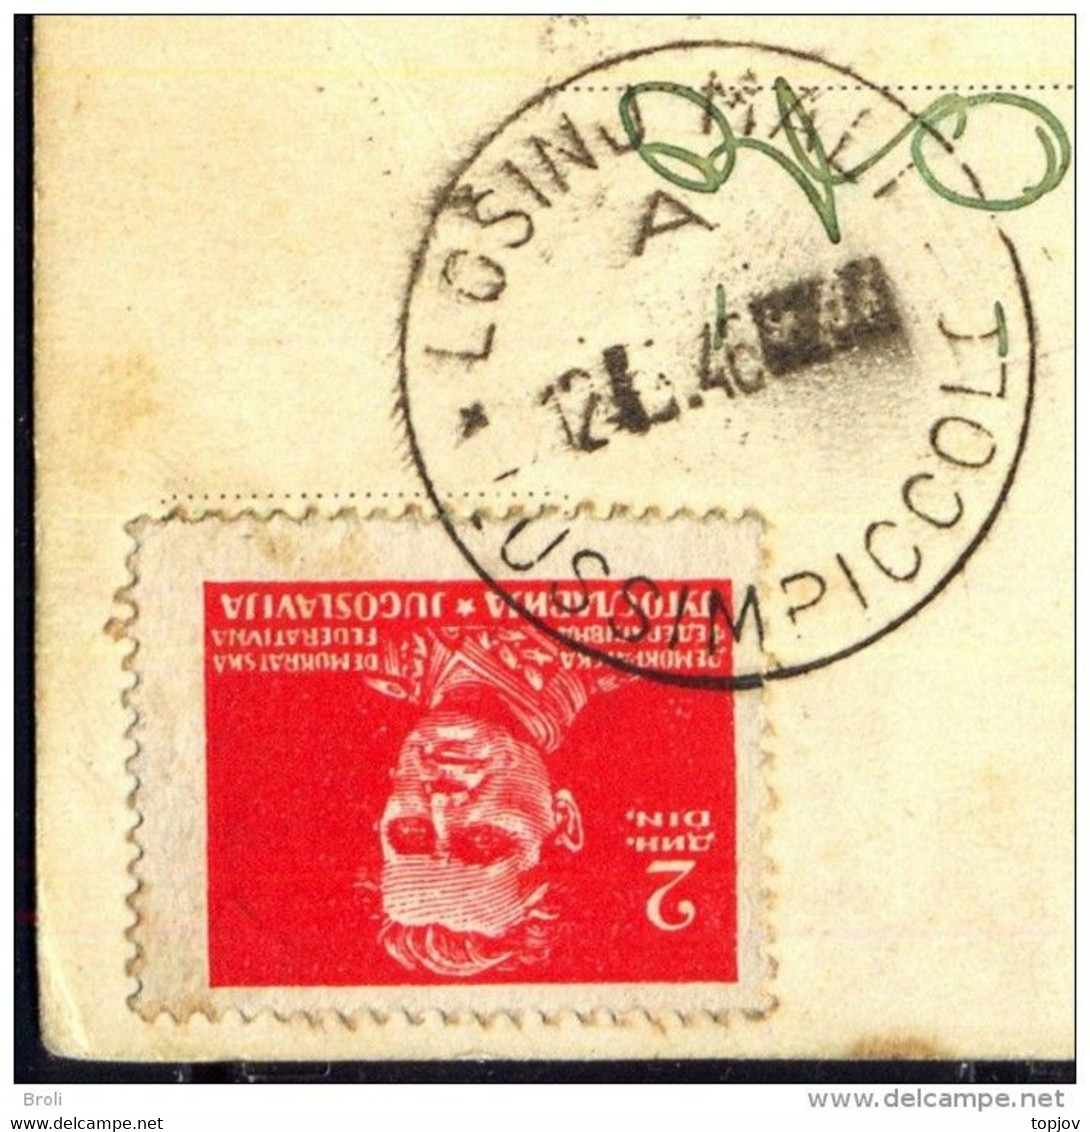 JUGOSLAVIA - ISTRIA - ZONA B - ERROR - Postmark "LOSINJ MALI - LUSSIMPICCOLO" - 1946 - EXTREM RARE - Marcofilía